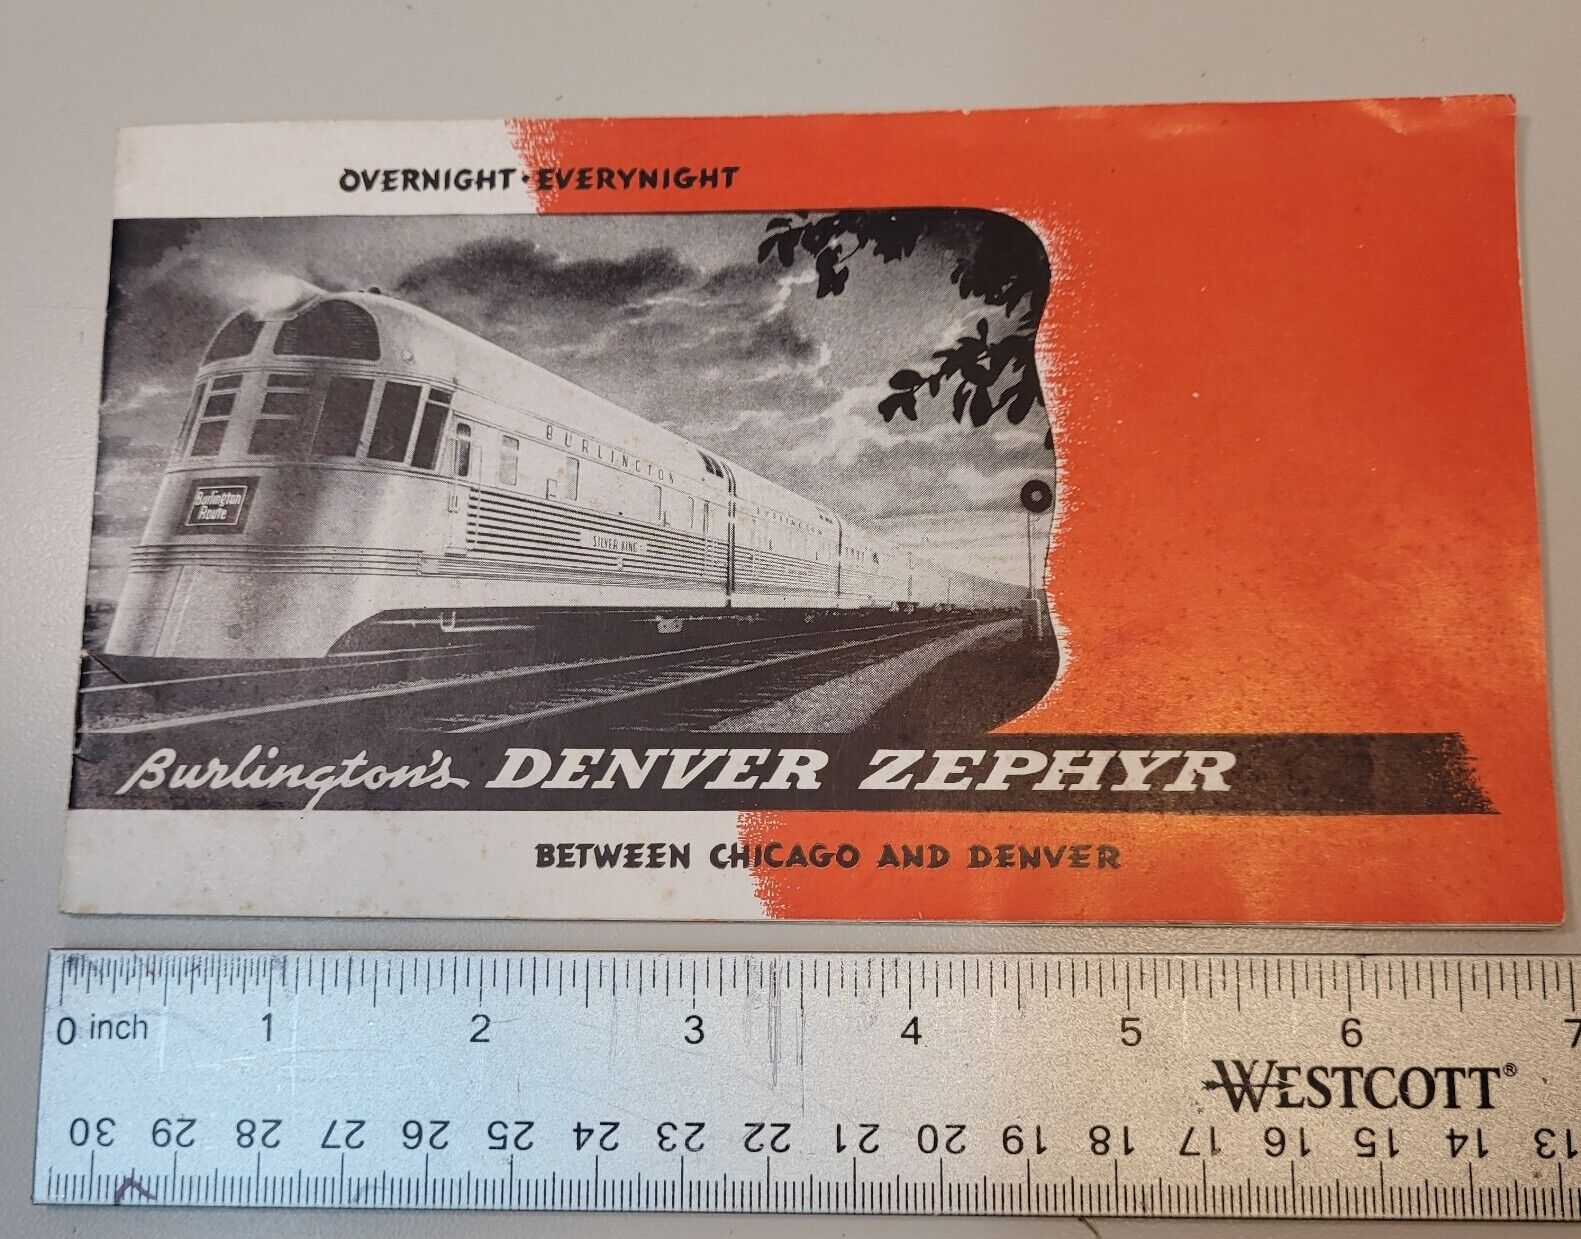 VTG 1948 Burlington\'s Railroad Denver Zephyr Between Chicago & Denver Booklet